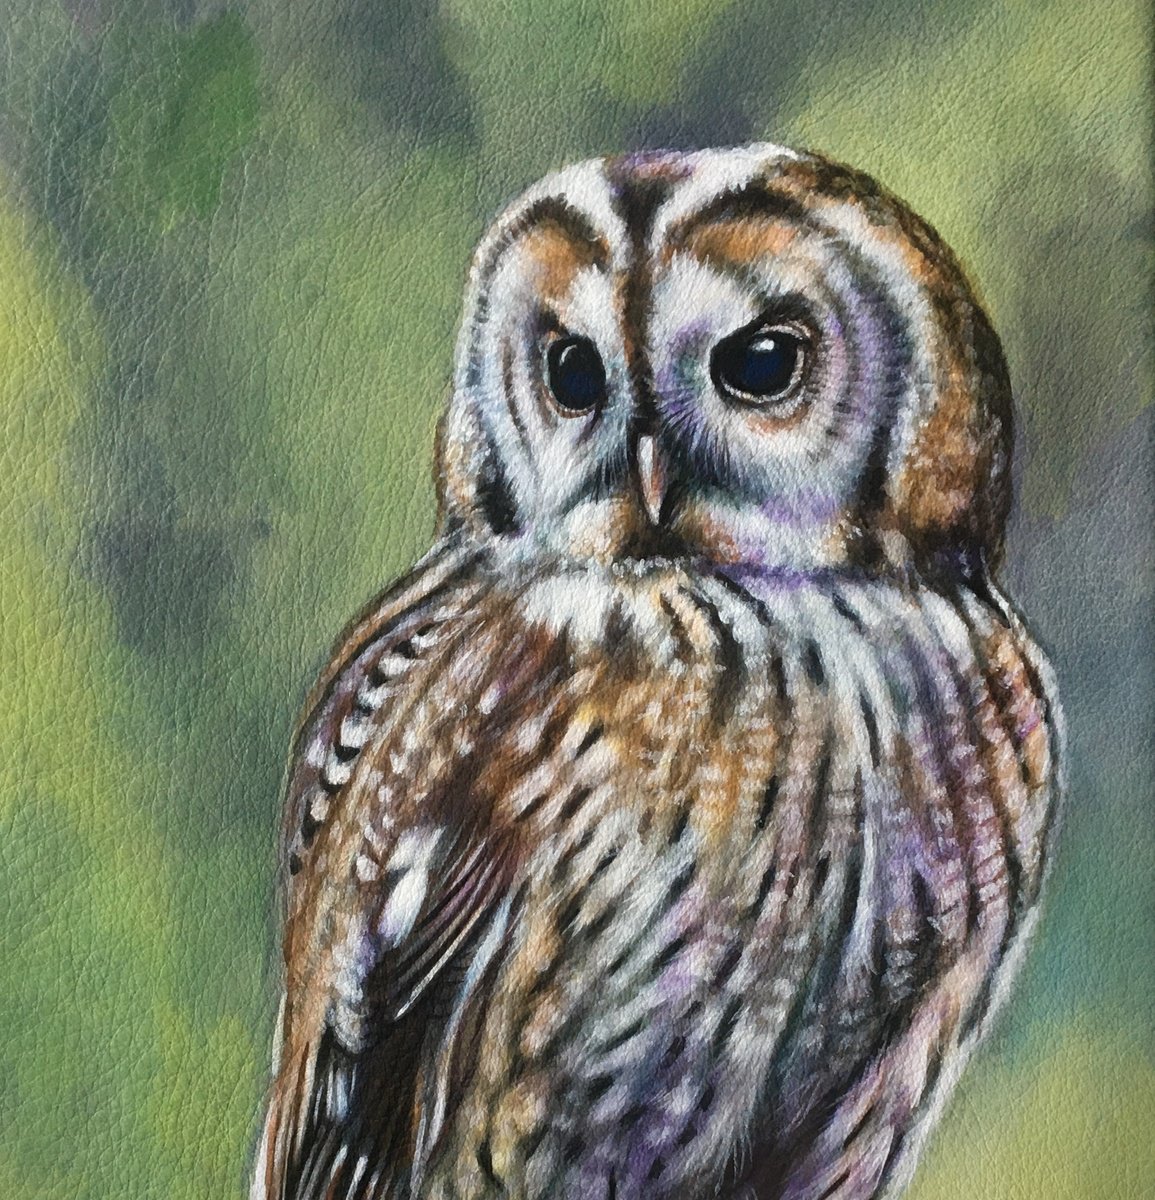 Athena - tawny Owl by Karl Hamilton-Cox